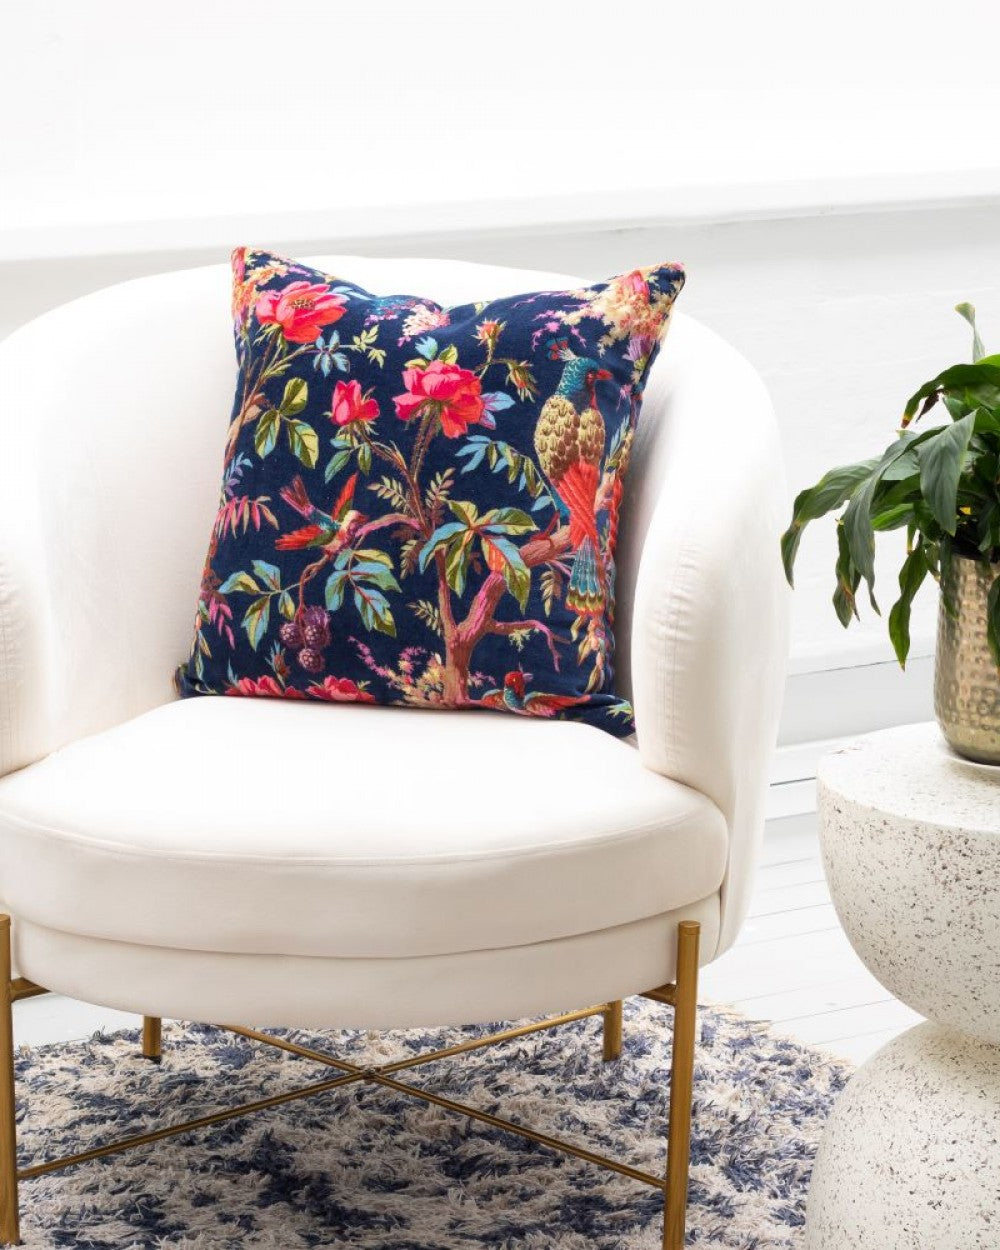 Paradise navy velvet cushion with bird of paradise pattern